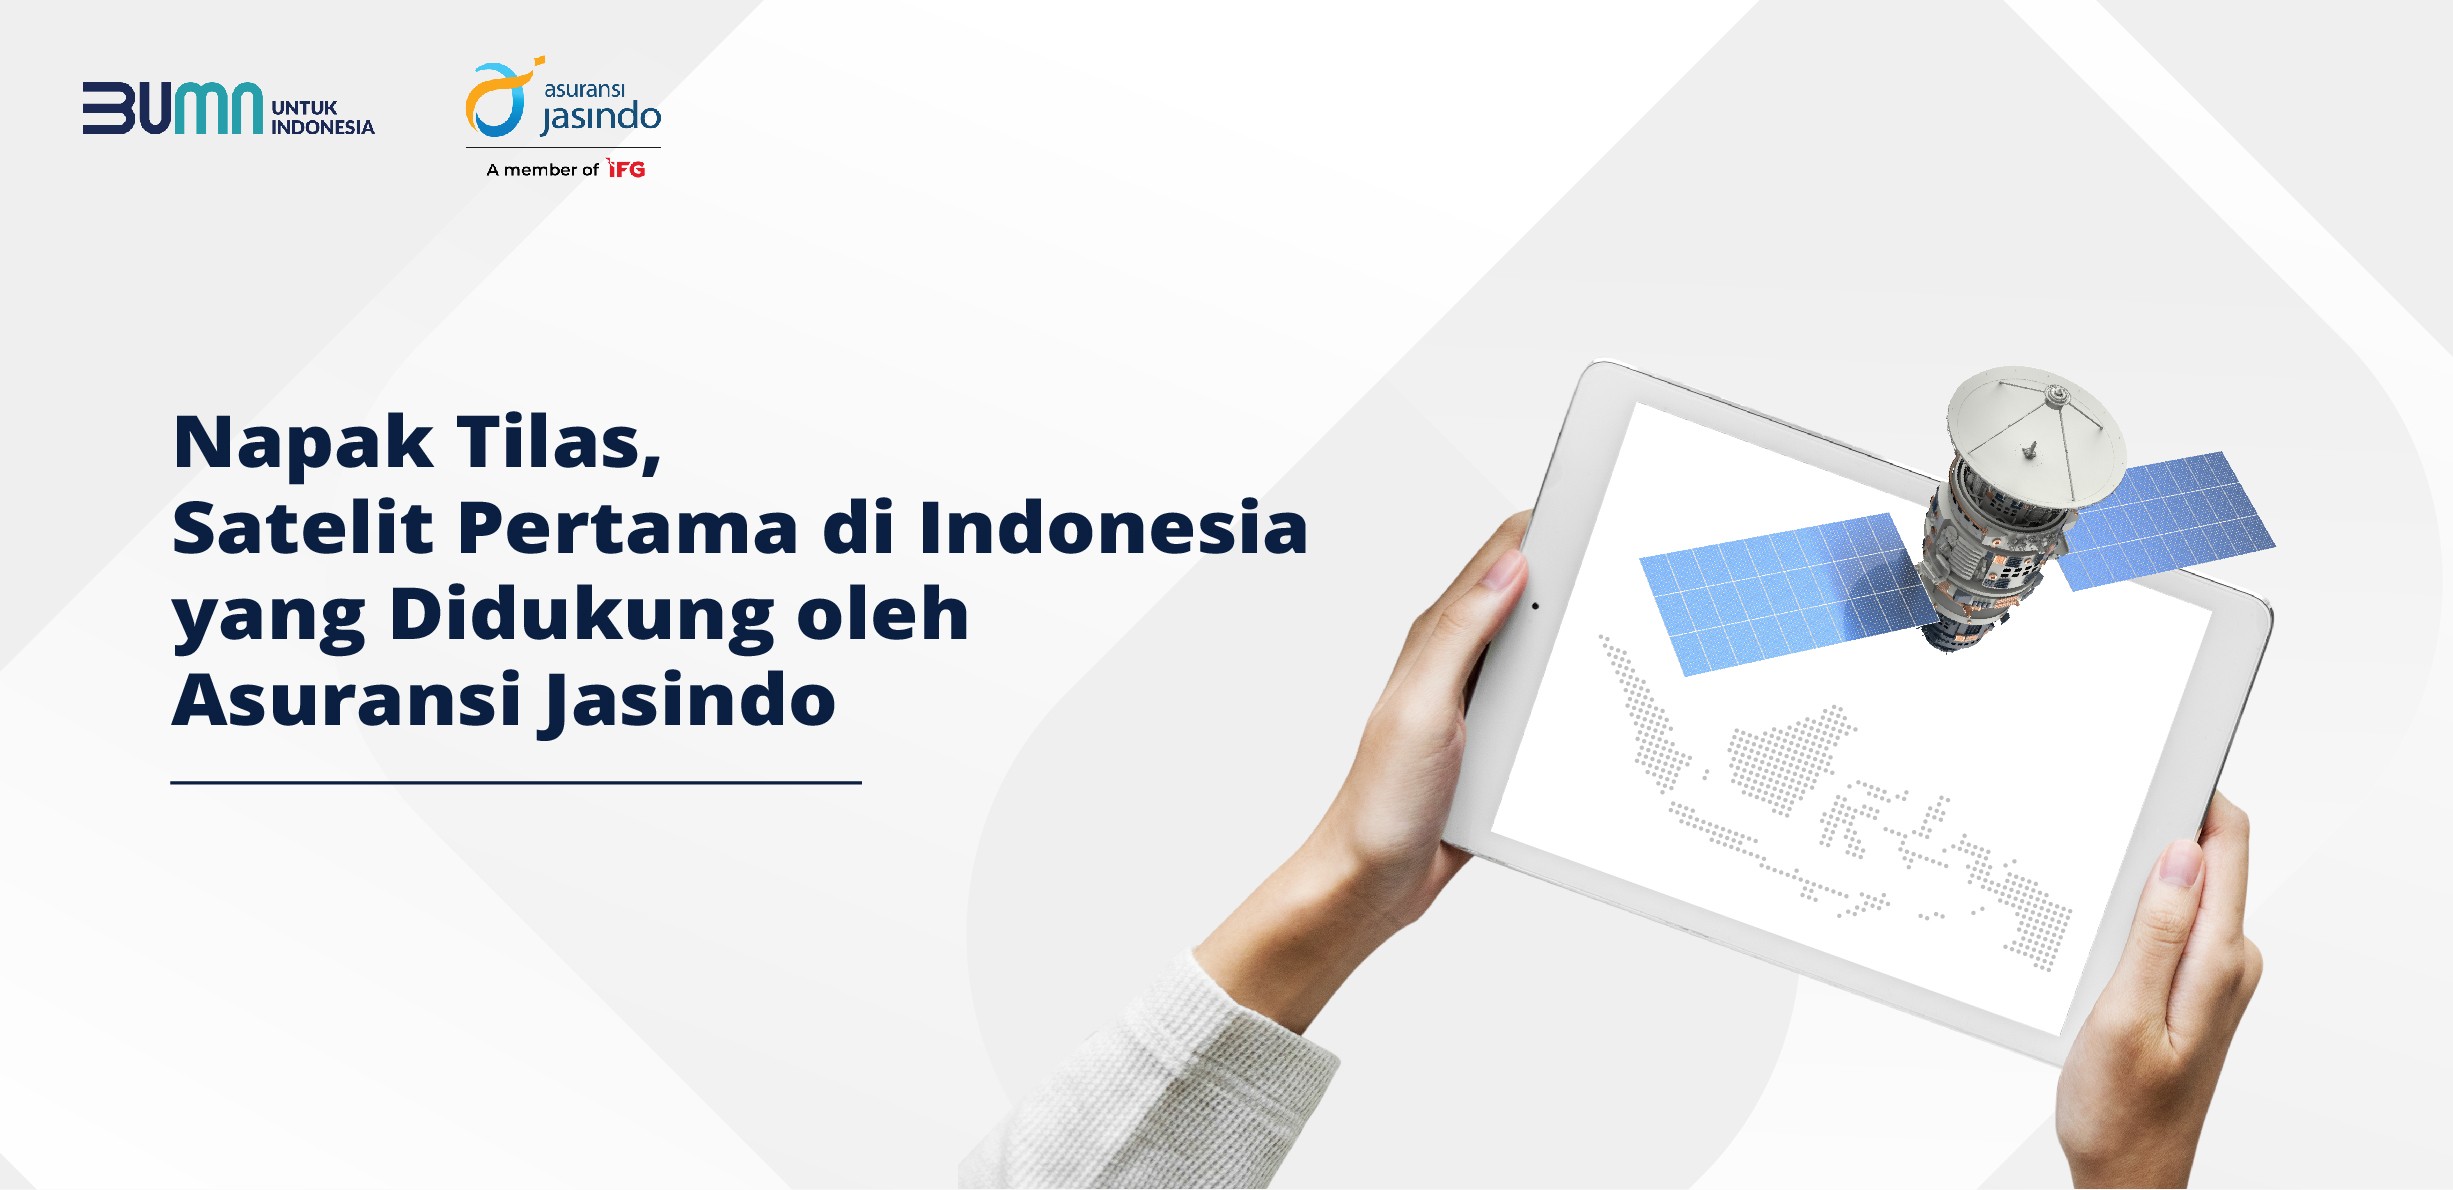 Napak Tilas, Satelit Pertama di Indonesia yang Didukung oleh Asuransi Jasindo